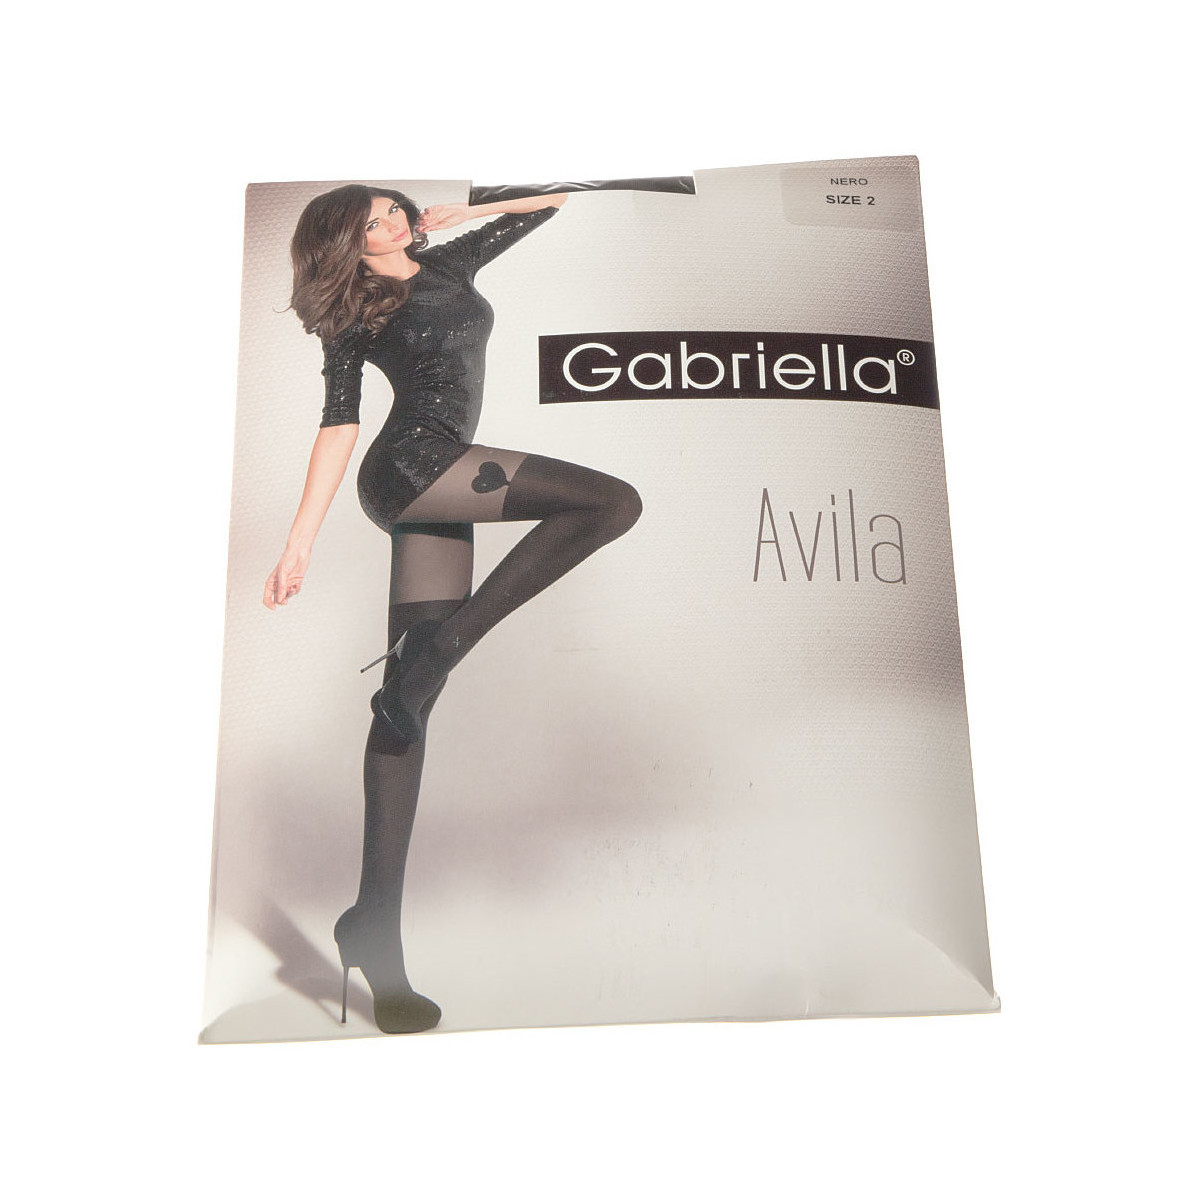 Sous-vêtements Femme Collants & bas Gabriella Collant fin - Semi opaque - Avila Noir